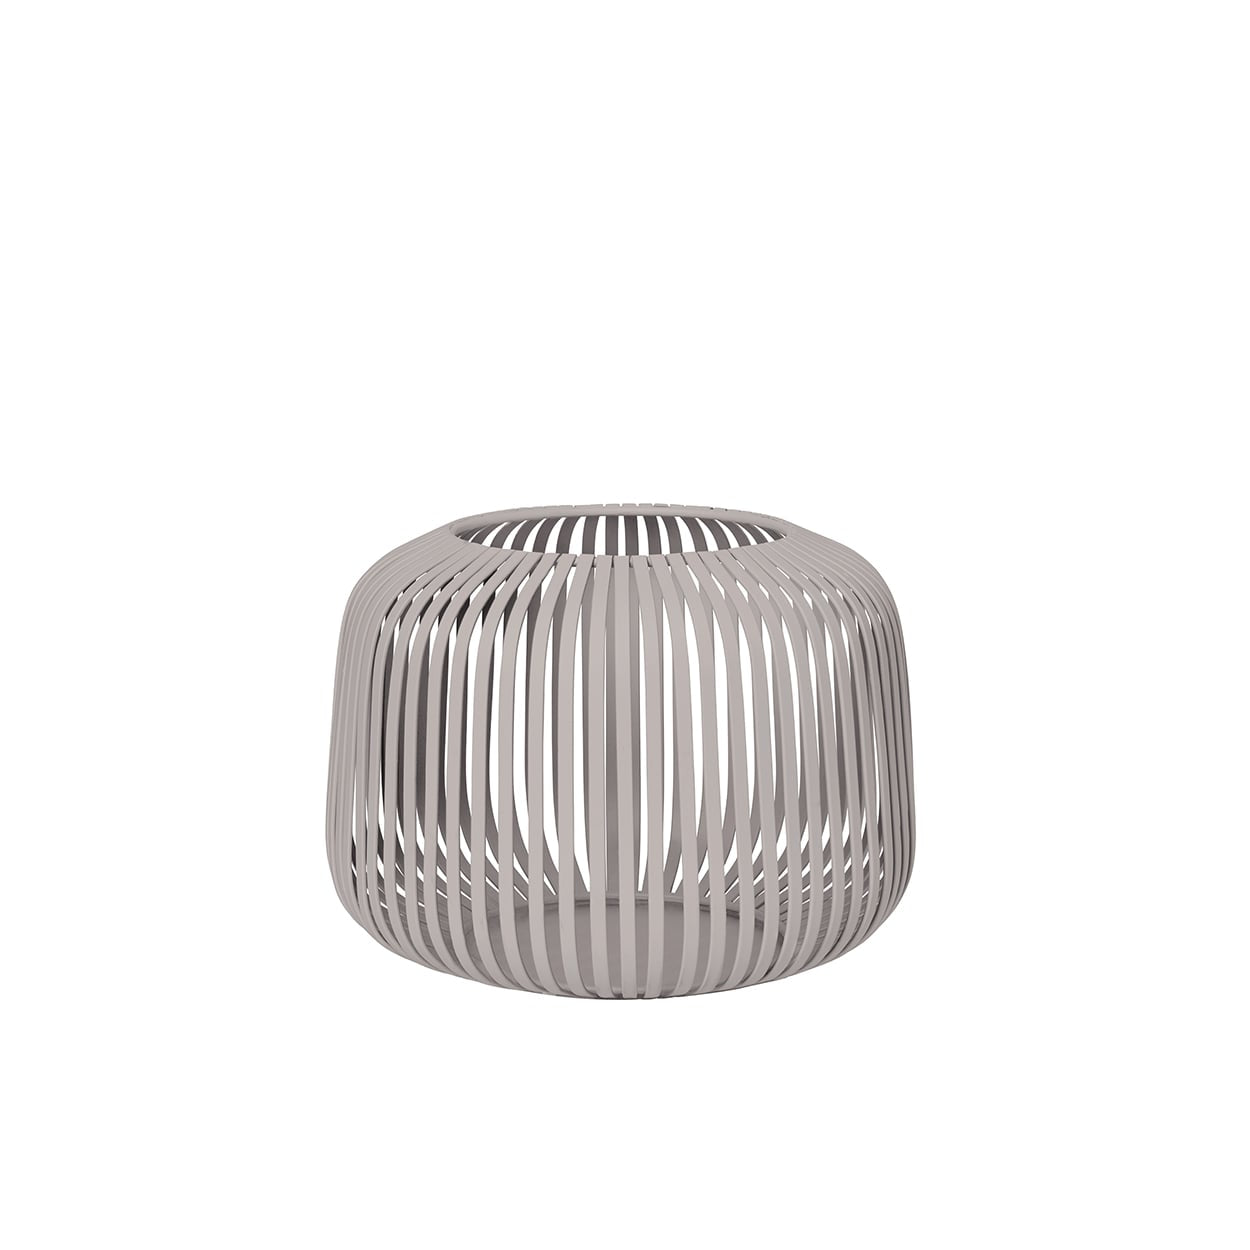 Blomus Lantern - Powder Coated Steel in Dove-Grey: XS 14x10cm Lito